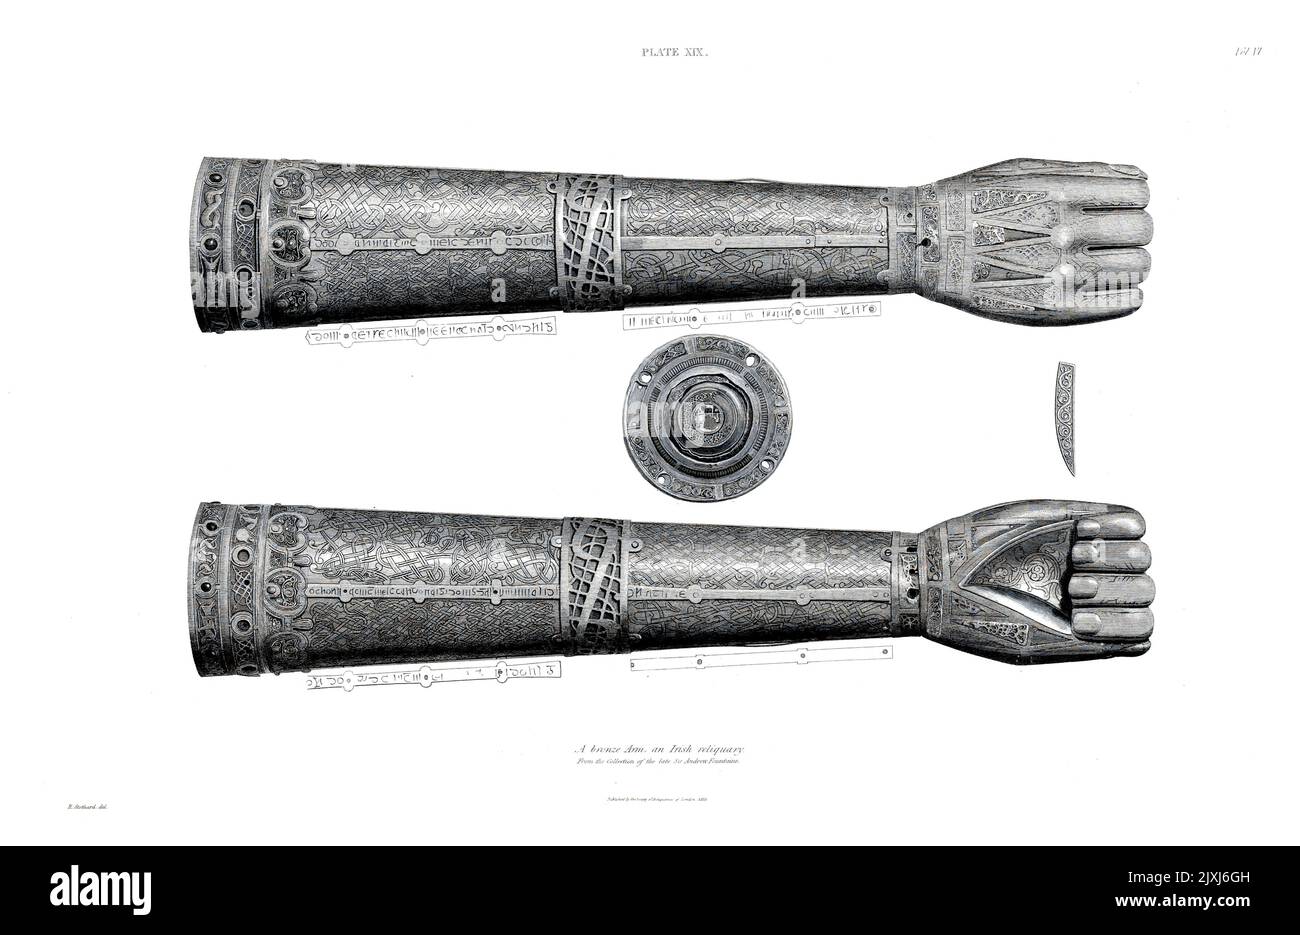 Descripción de un Brazo de Bronce, un Reliquario Irlandés, de la Colección del difunto Sir Andrew Fountaine. Está grabado al tamaño completo del original ; y es de latón o bronce, la mano, que está remachada al brazo en la muñeca, siendo incrustada, en las uñas, la palma, y en la espalda, y alrededor de la muñeca, con plata. El extremo superior del brazo también está adornado con el mismo metal, y con una hilera de piedras de color gris azulado que se asemejan a la calcedonia, y parece haber habido una segunda hilera de piedras por encima de la otra. Remachado a través del centro del brazo hay una banda ancha con nudos en relieve ; y. Foto de stock